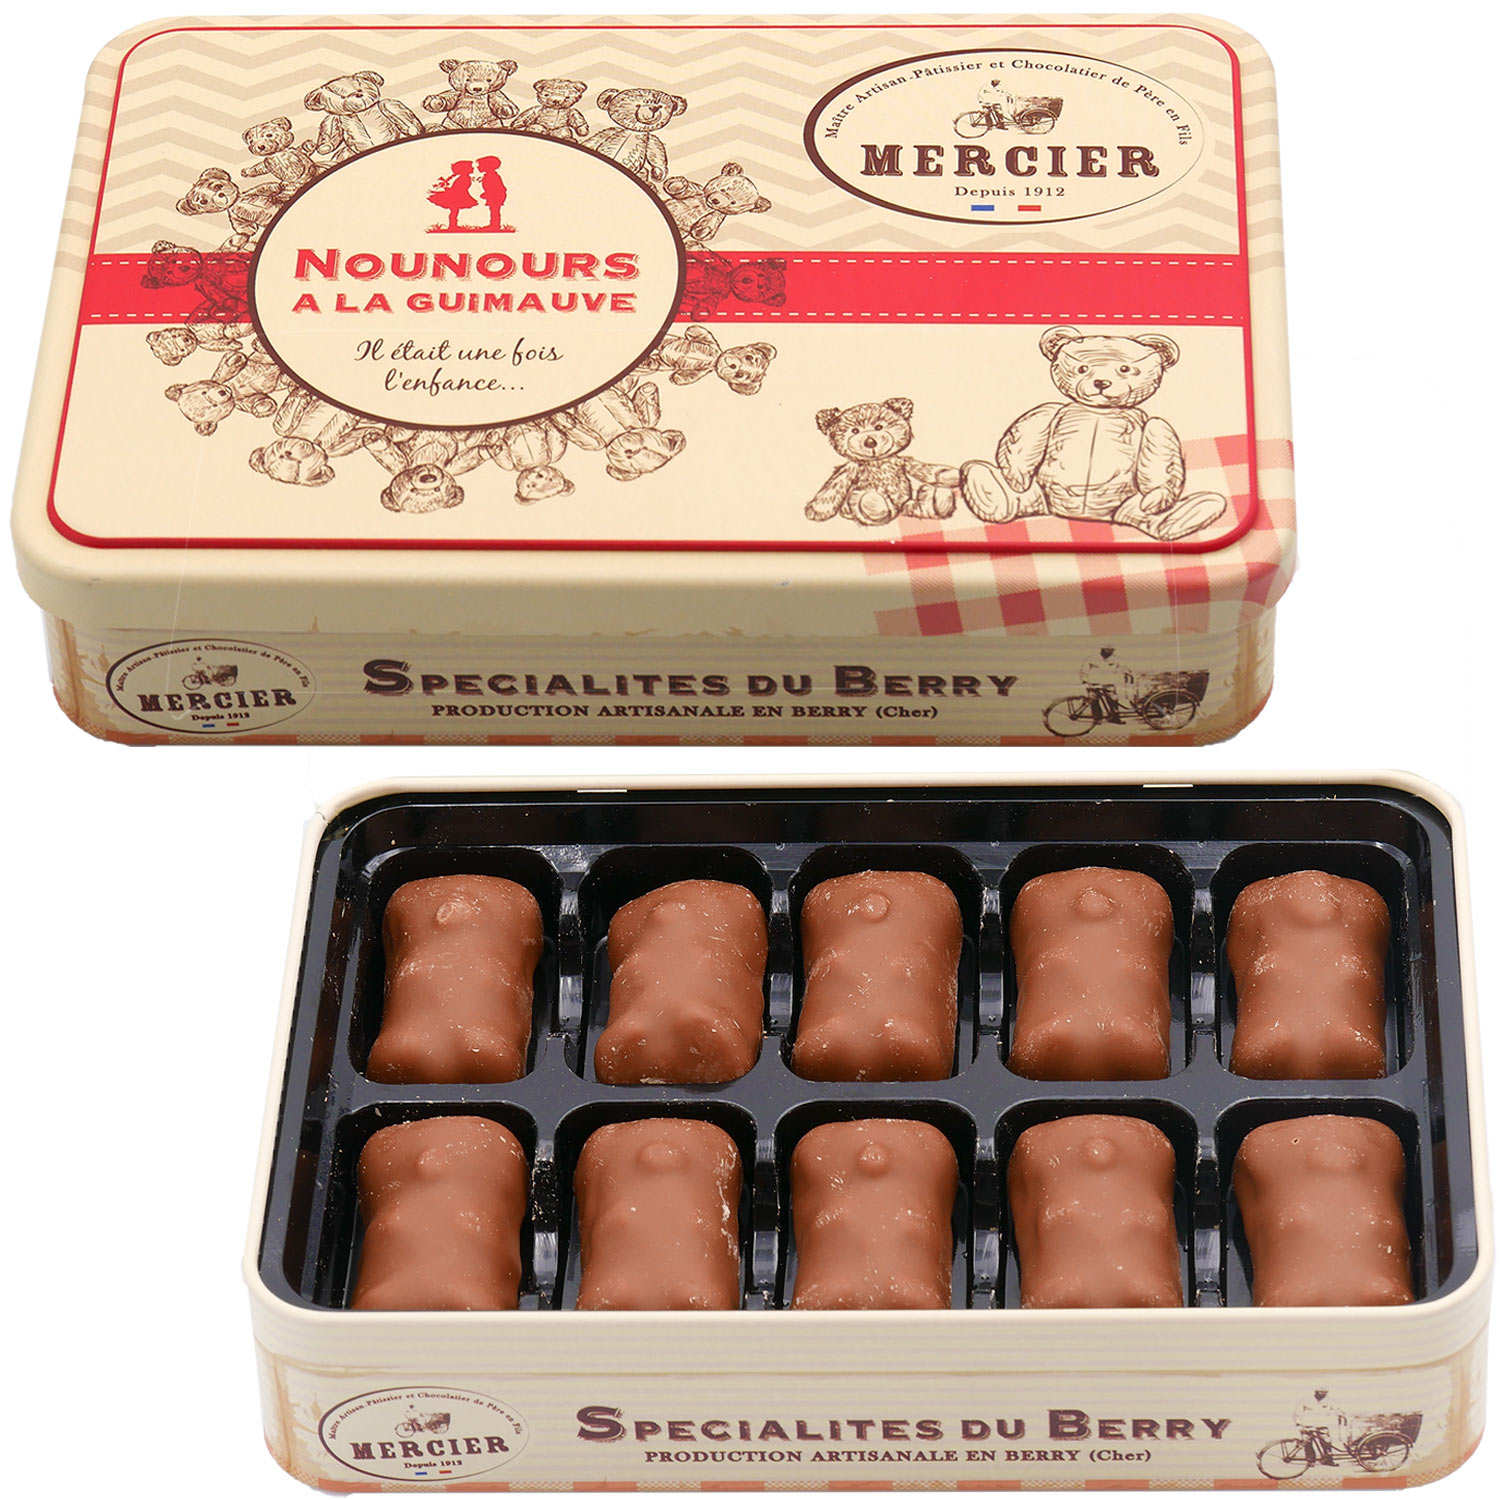 Boîte ourson guimauve chocolat